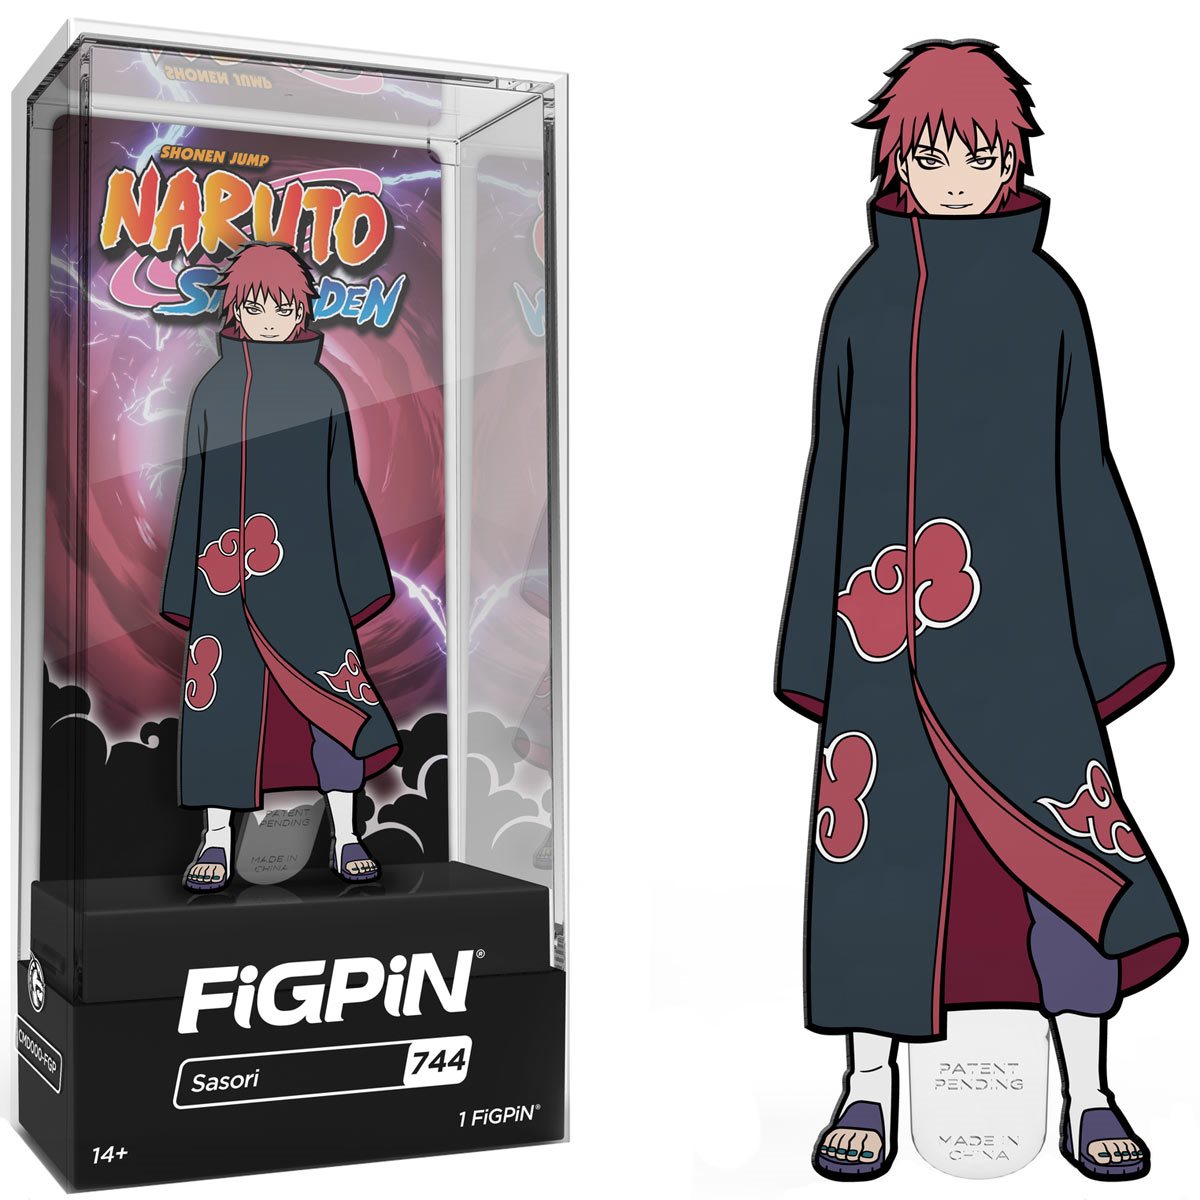 FiGPiN Classic: Naruto Shippuden - Sasuke Uchiha #92